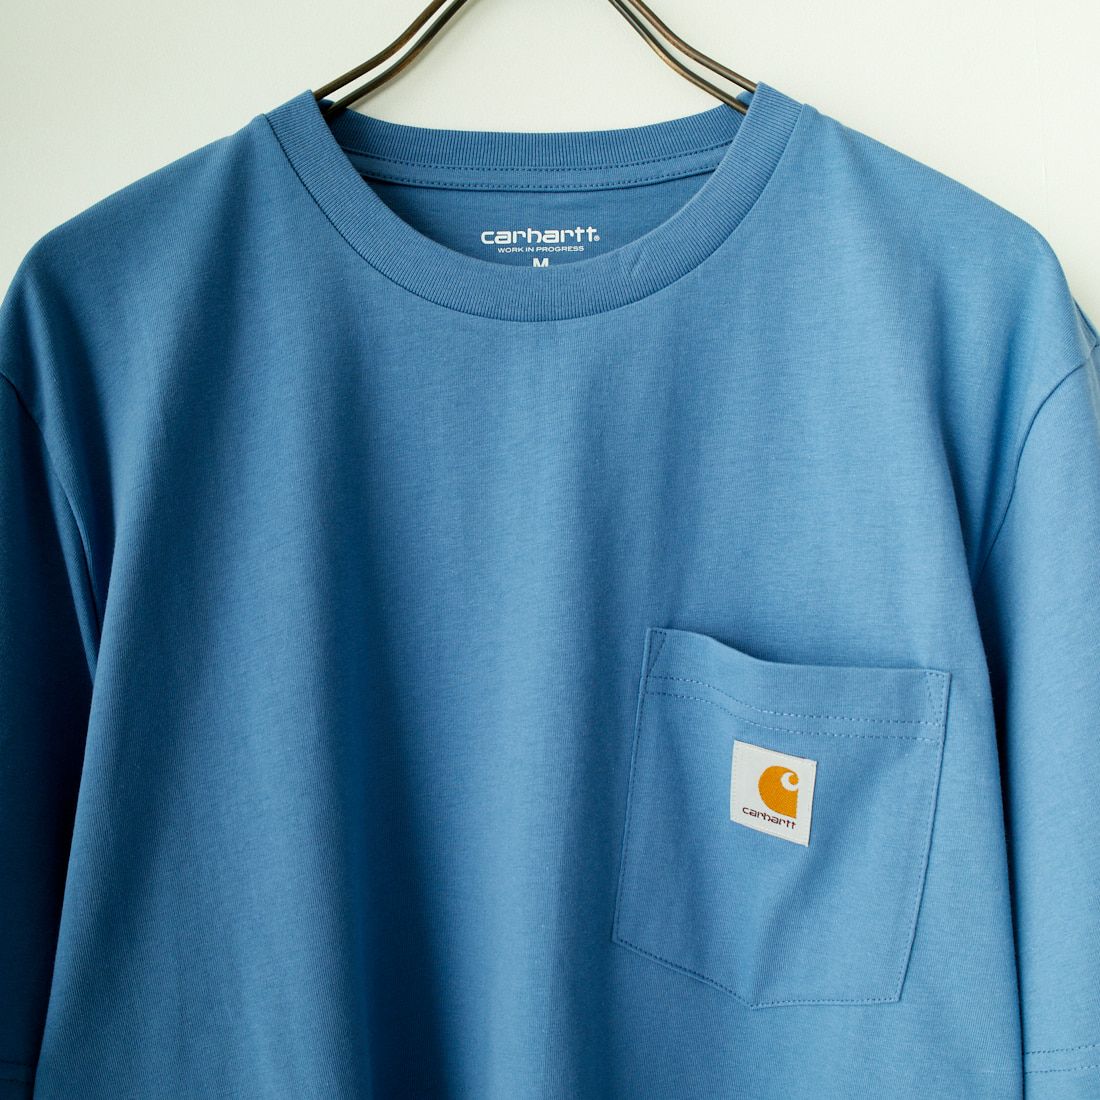 carhartt WIP [カーハートダブリューアイピー] ショートスリーブポケットTシャツ [I030434] SORRENT